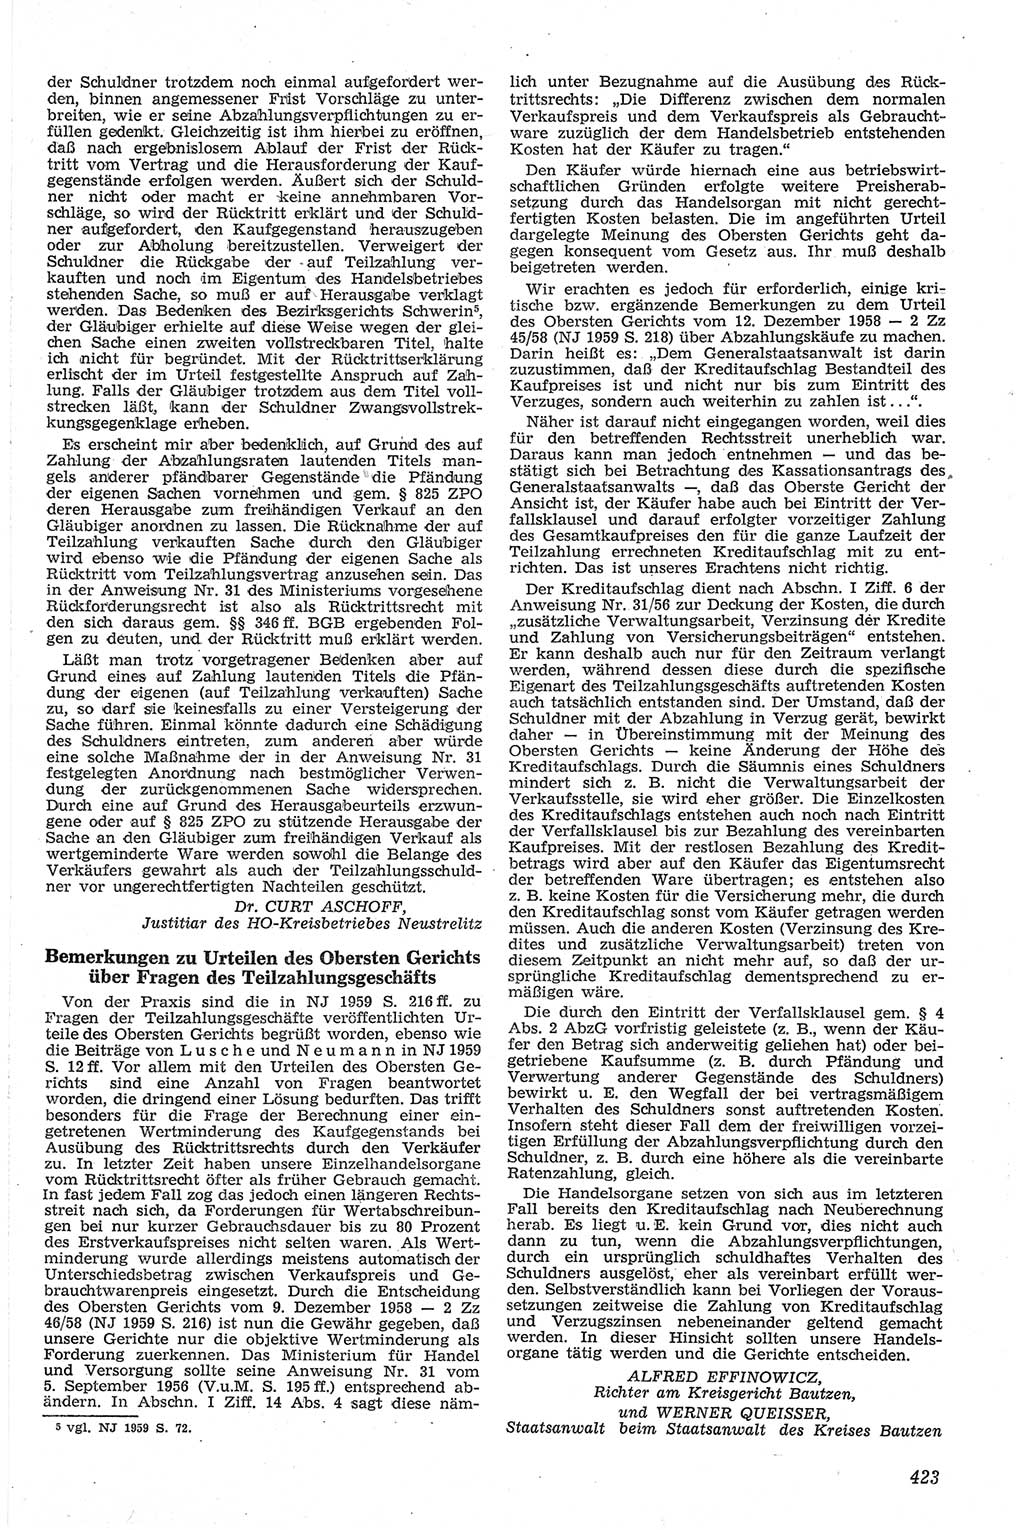 Neue Justiz (NJ), Zeitschrift für Recht und Rechtswissenschaft [Deutsche Demokratische Republik (DDR)], 13. Jahrgang 1959, Seite 423 (NJ DDR 1959, S. 423)